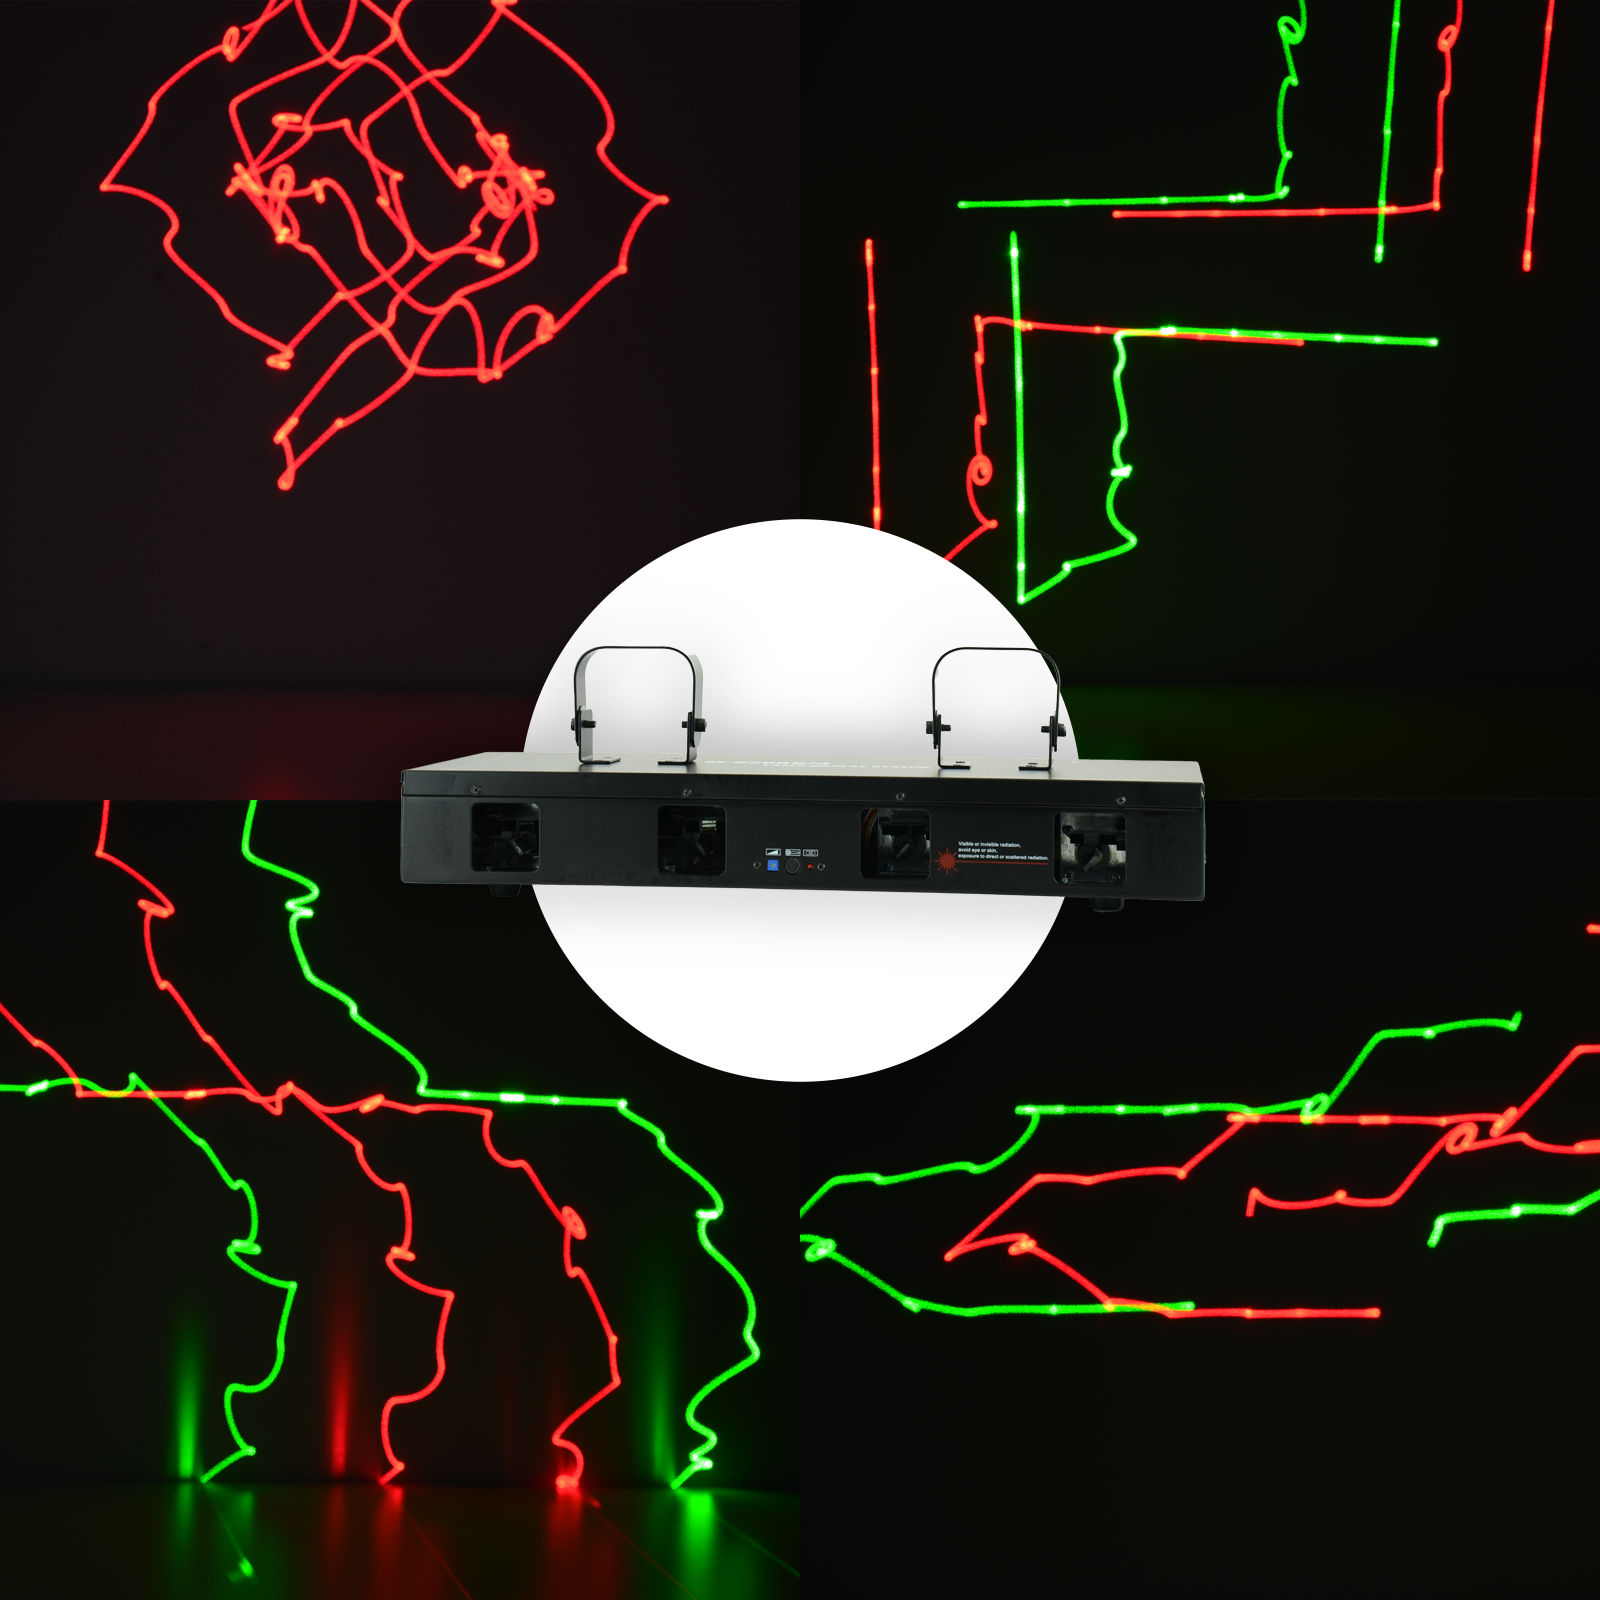 Laser 4-oknowy RG czerwono-zielony